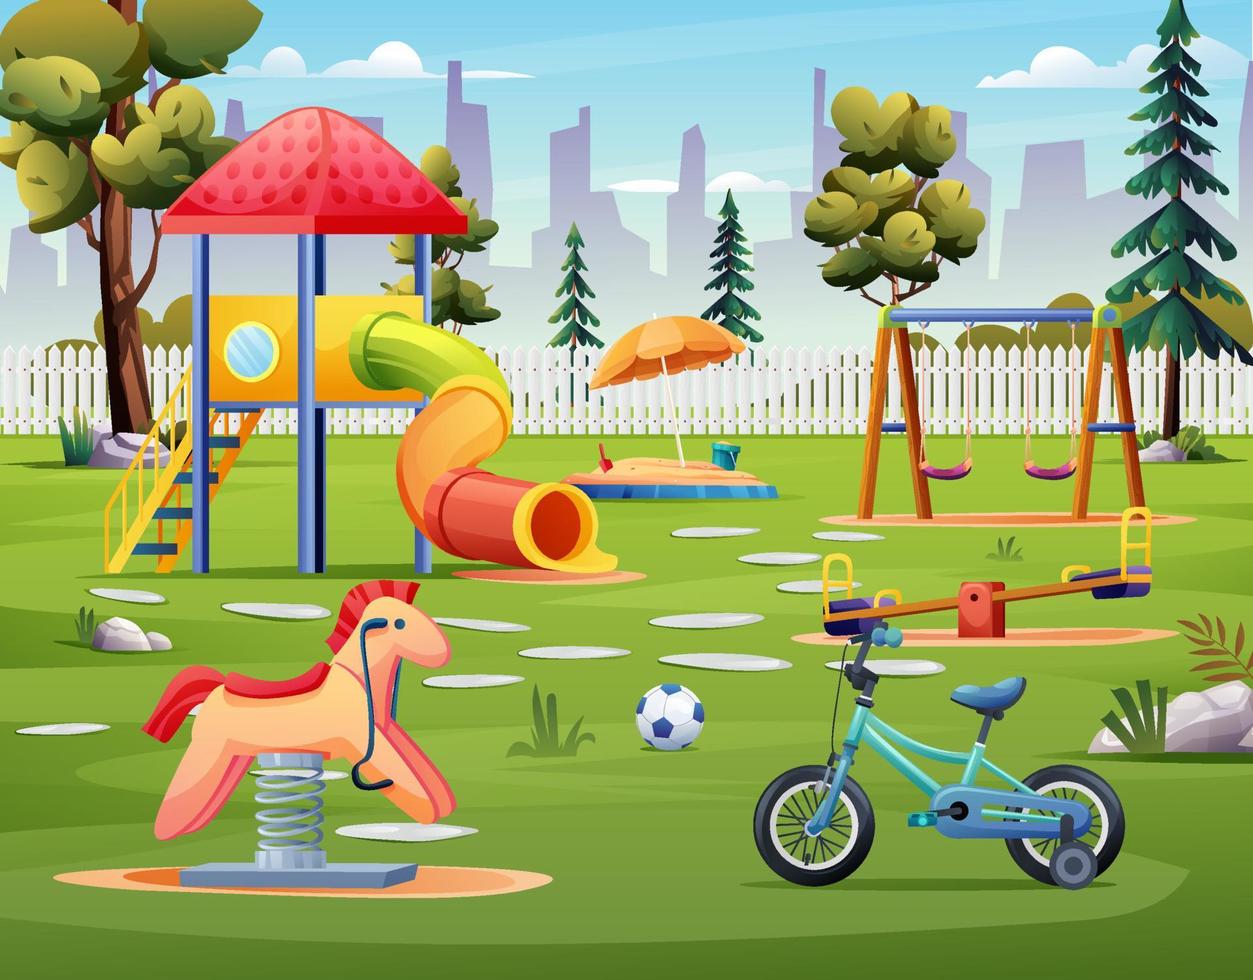 kinderspielplatz mit röhrenrutsche, schaukel, fahrrad und wippenkarikaturillustration vektor